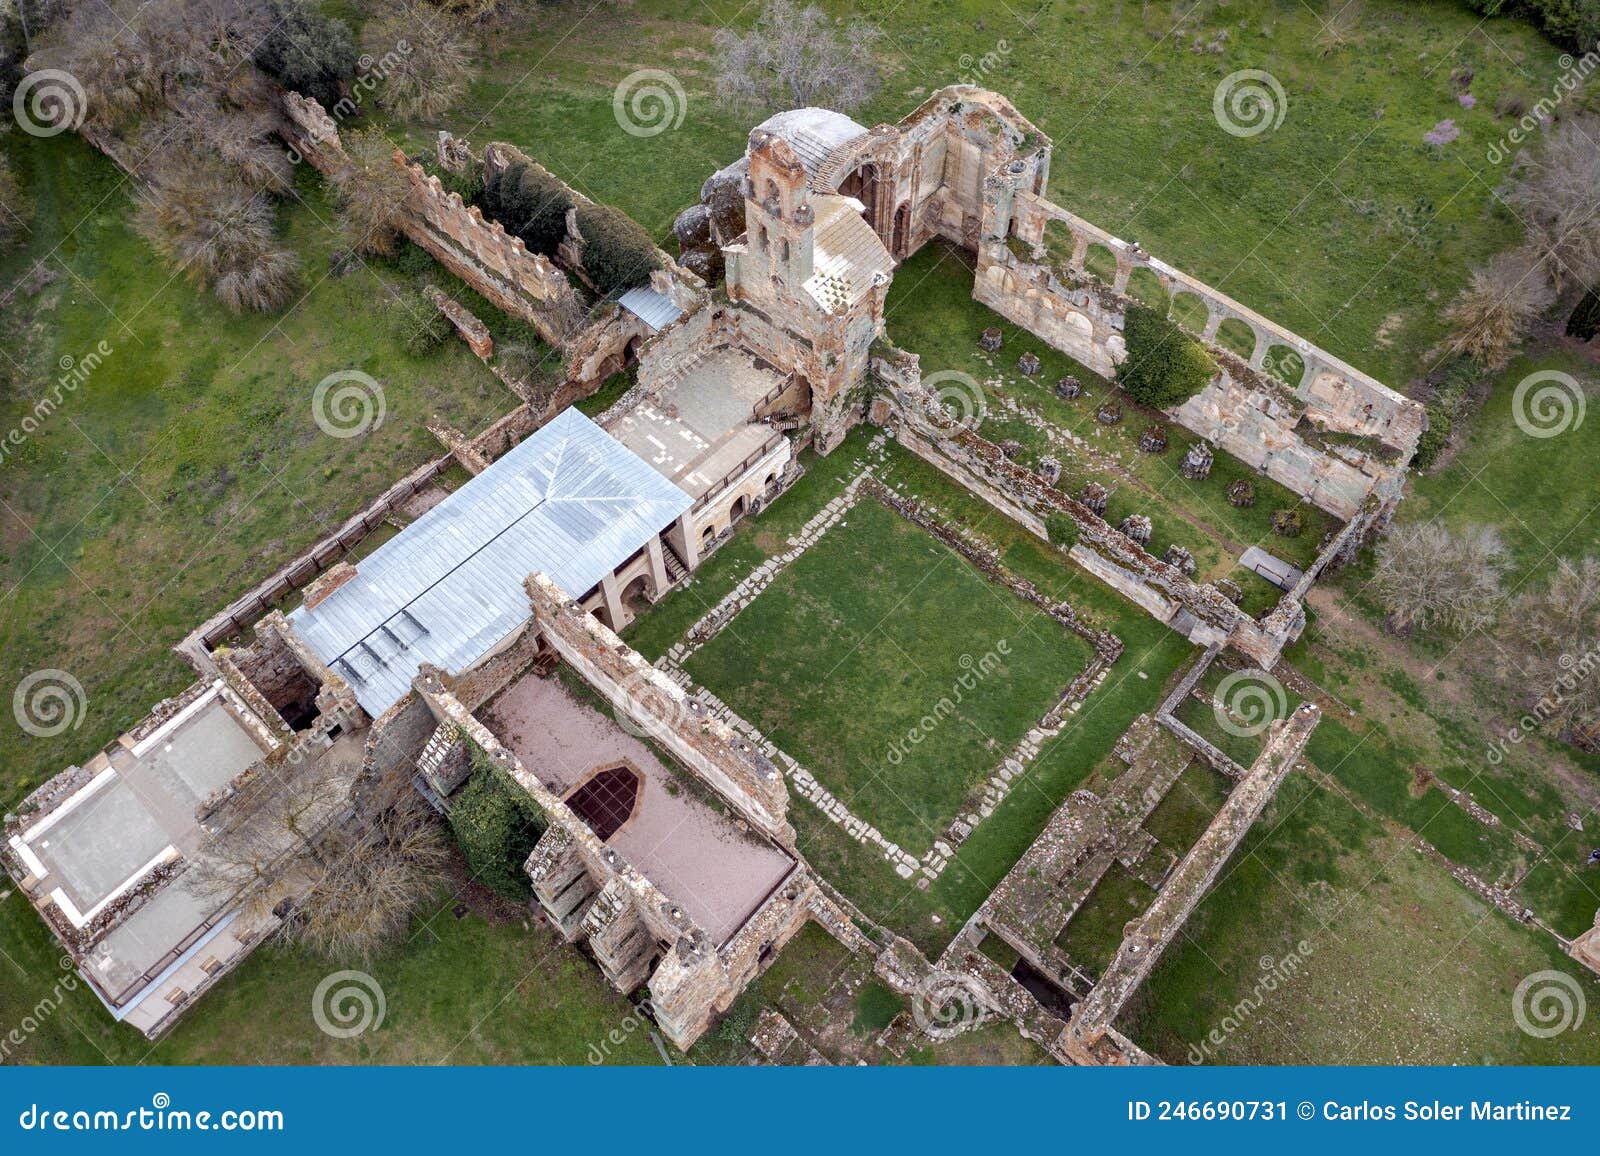 ruins of the cistercian monastery of santa maria de moreruela, zamora spain